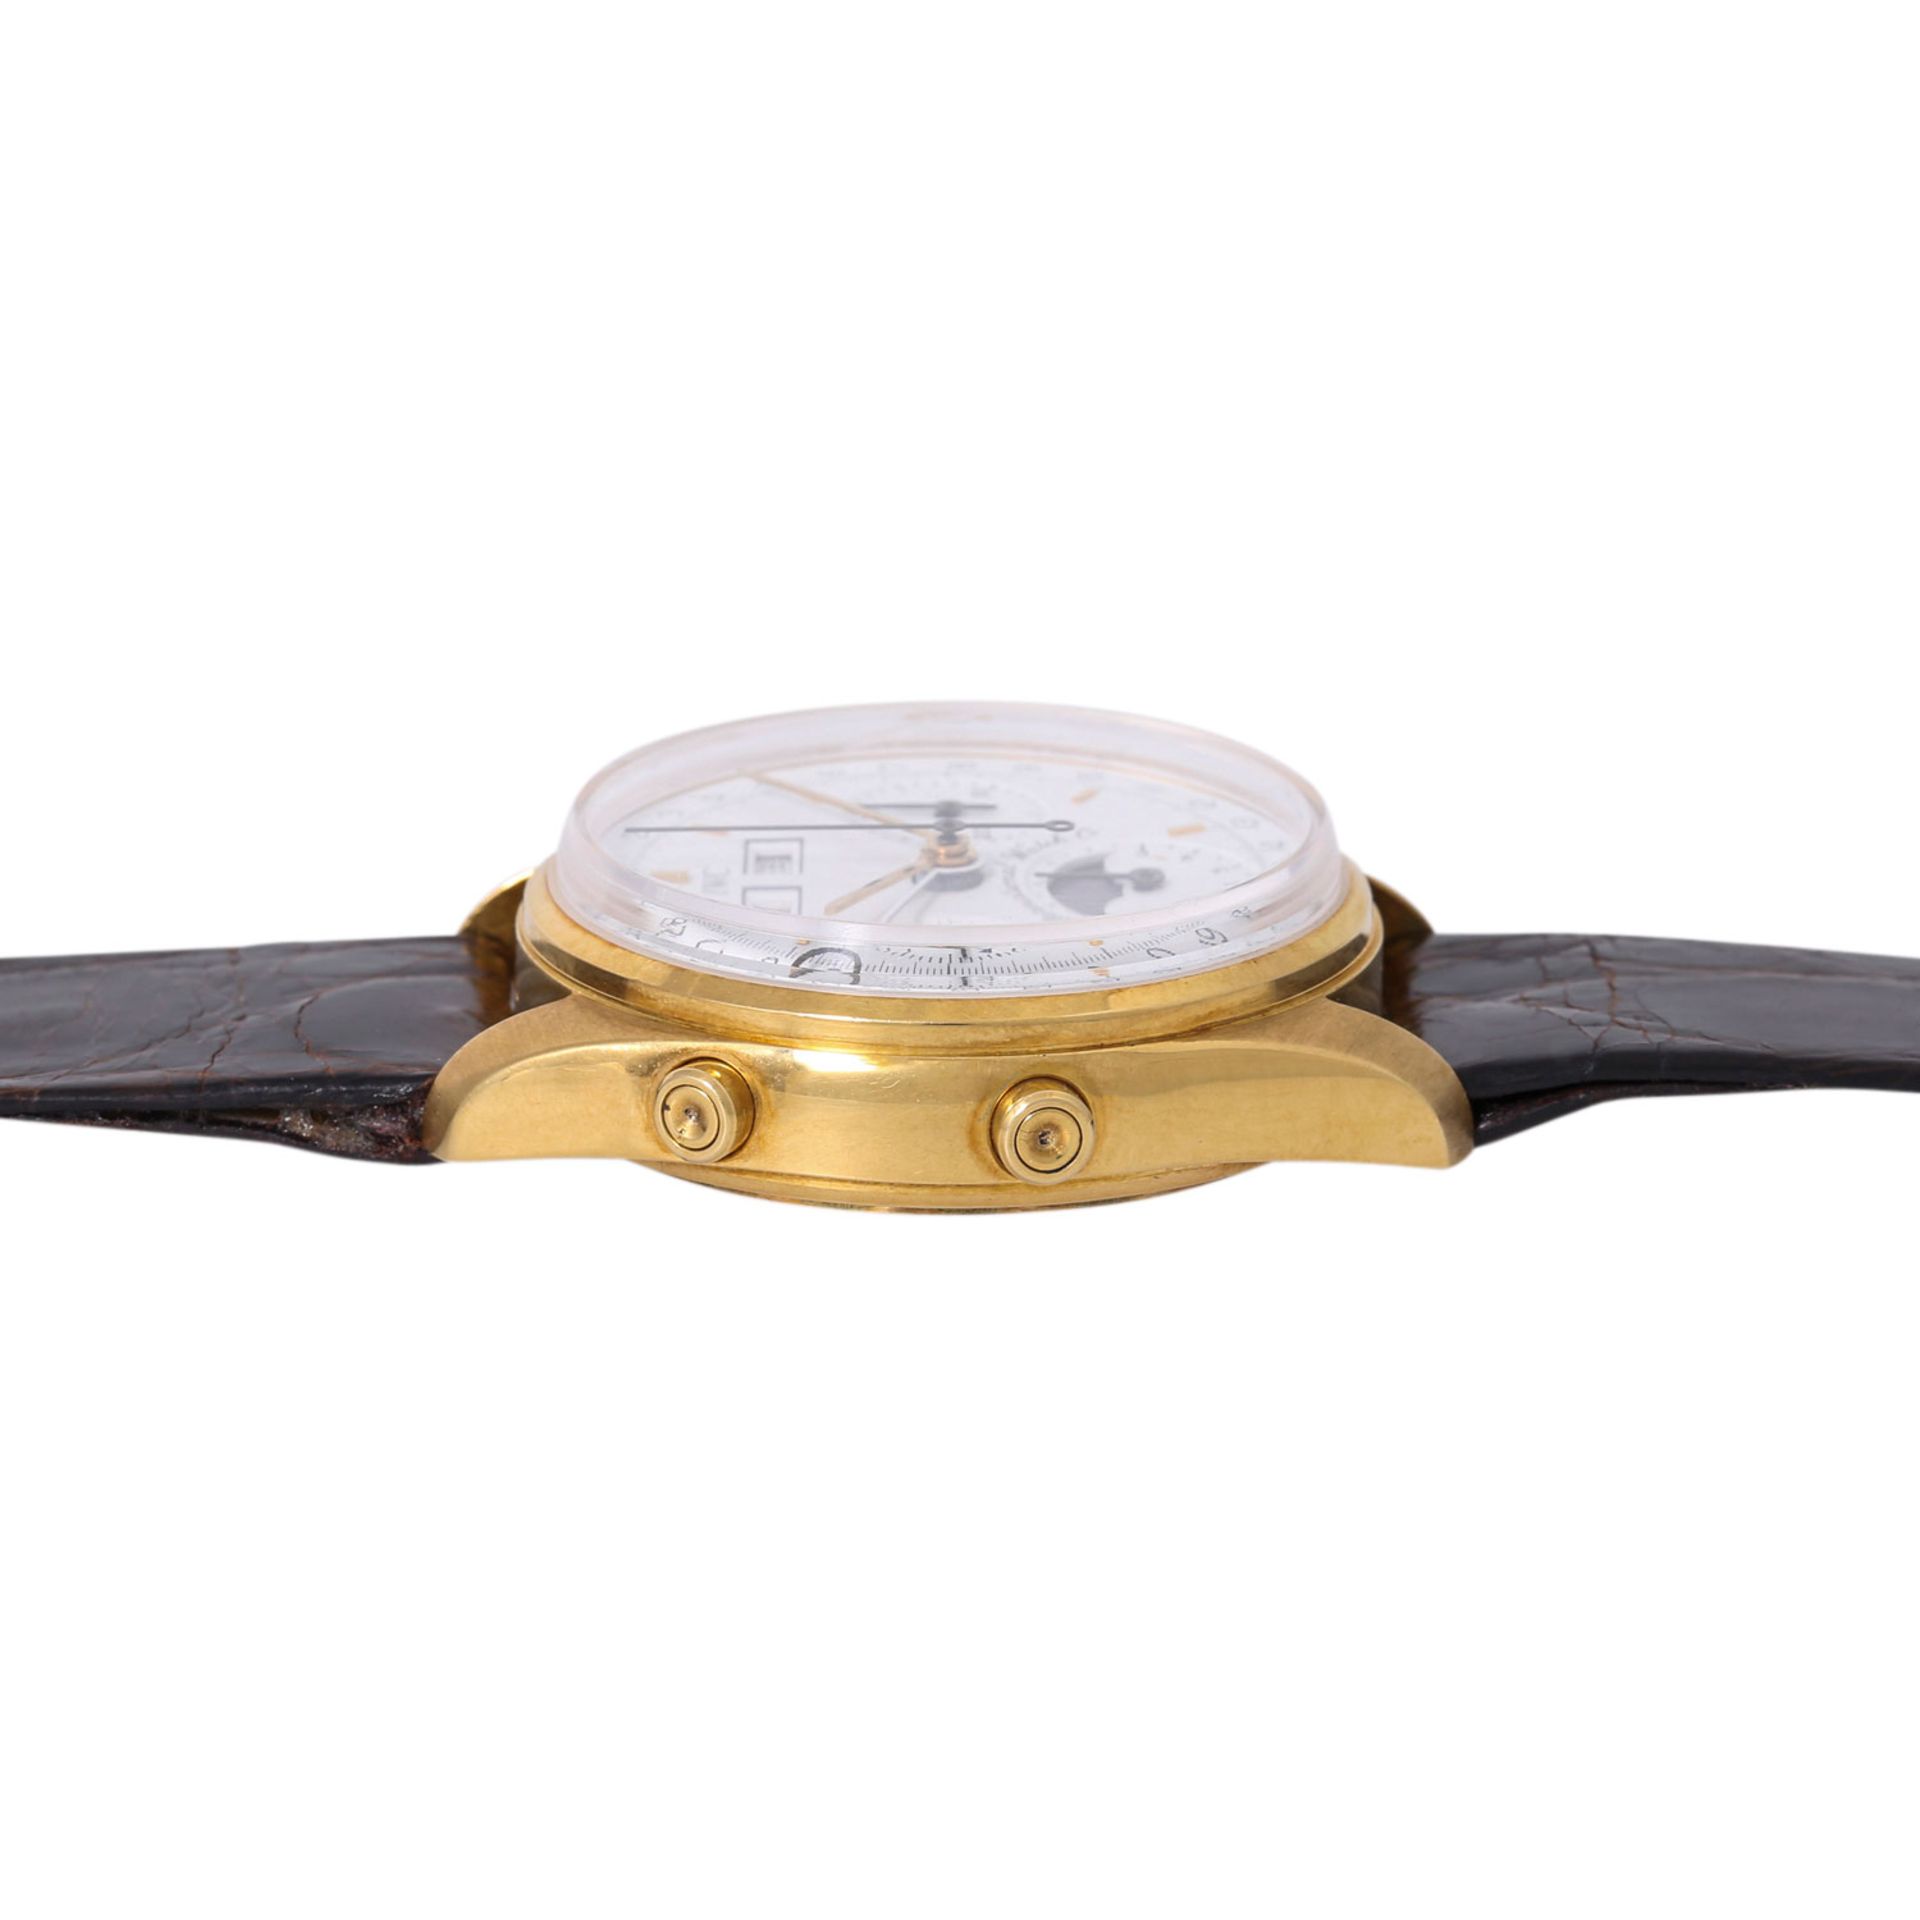 IWC sehr seltener Vollkalender Chronograph Vintage Herren Armbanduhr, Ref. 3710. NOS. Limitiert 150 - Bild 4 aus 8